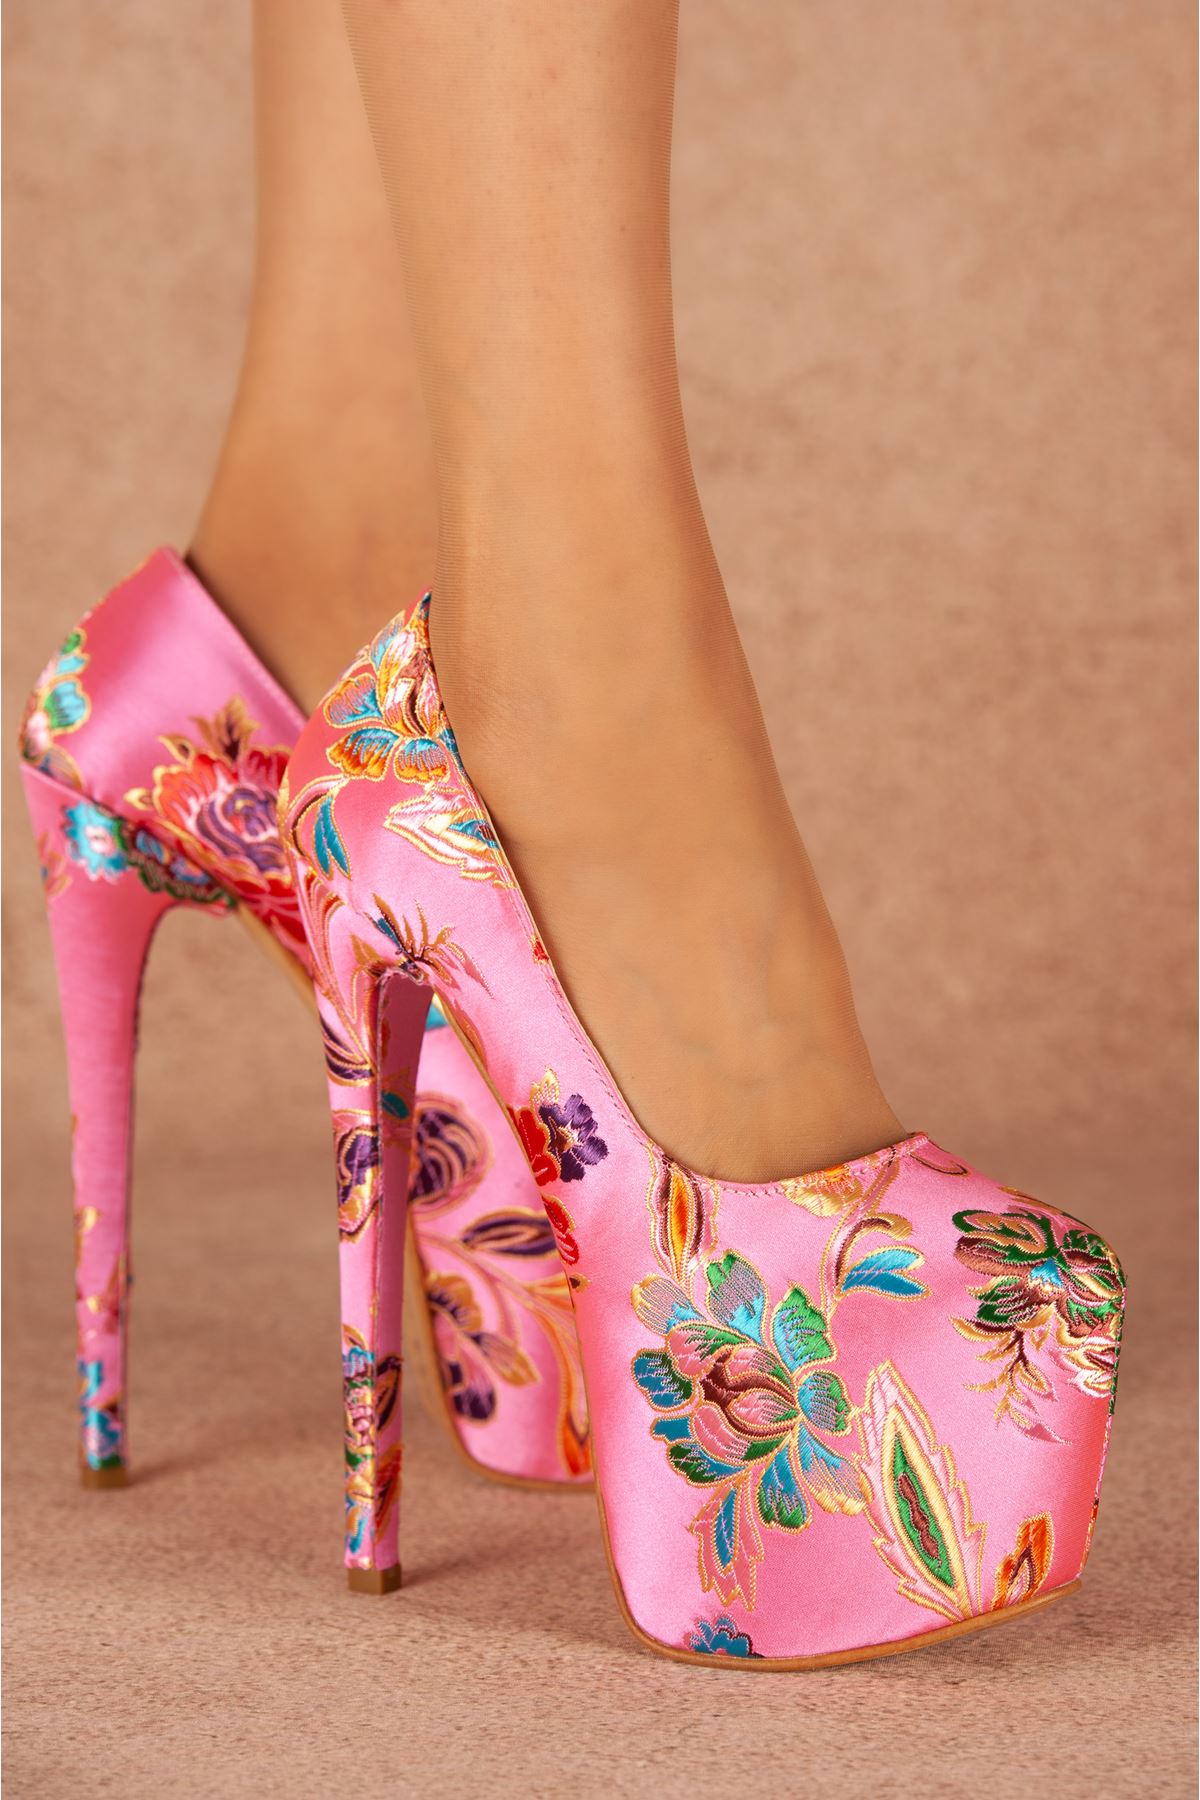 Josie Pembe Çiçekli Yüksek Kadın Topuklu Ayakkabı 19 Cm